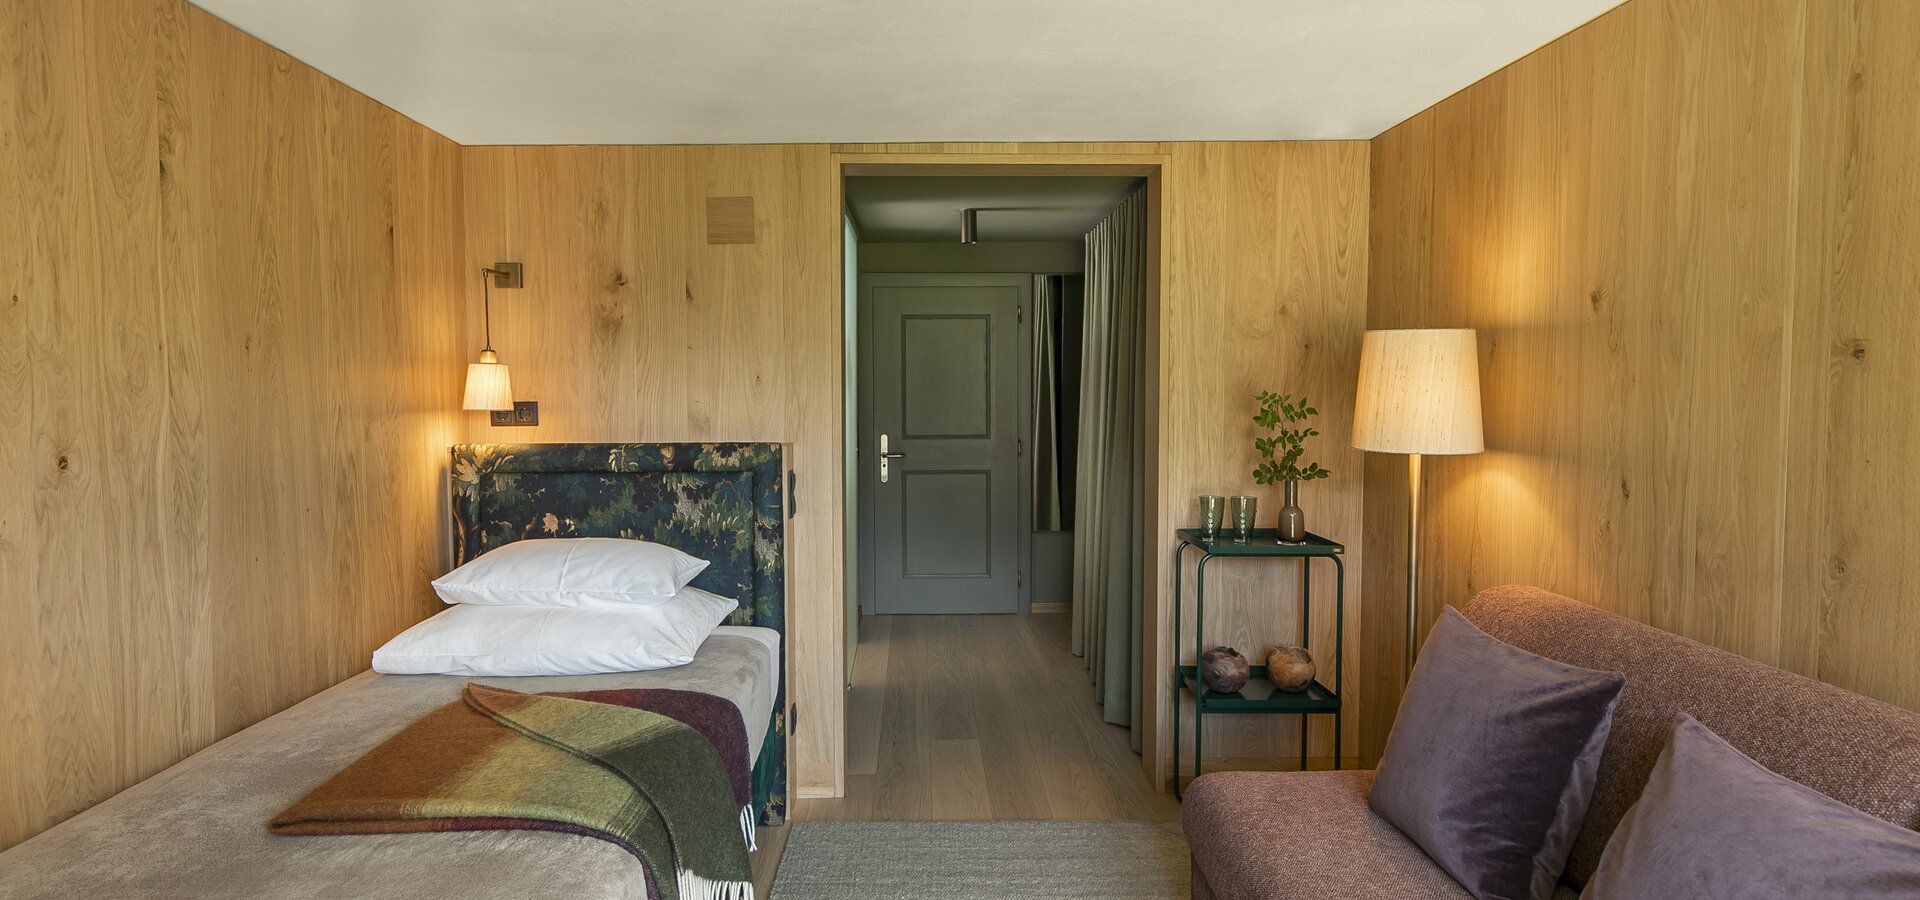 Einzelzimmer im Hotel in Lech